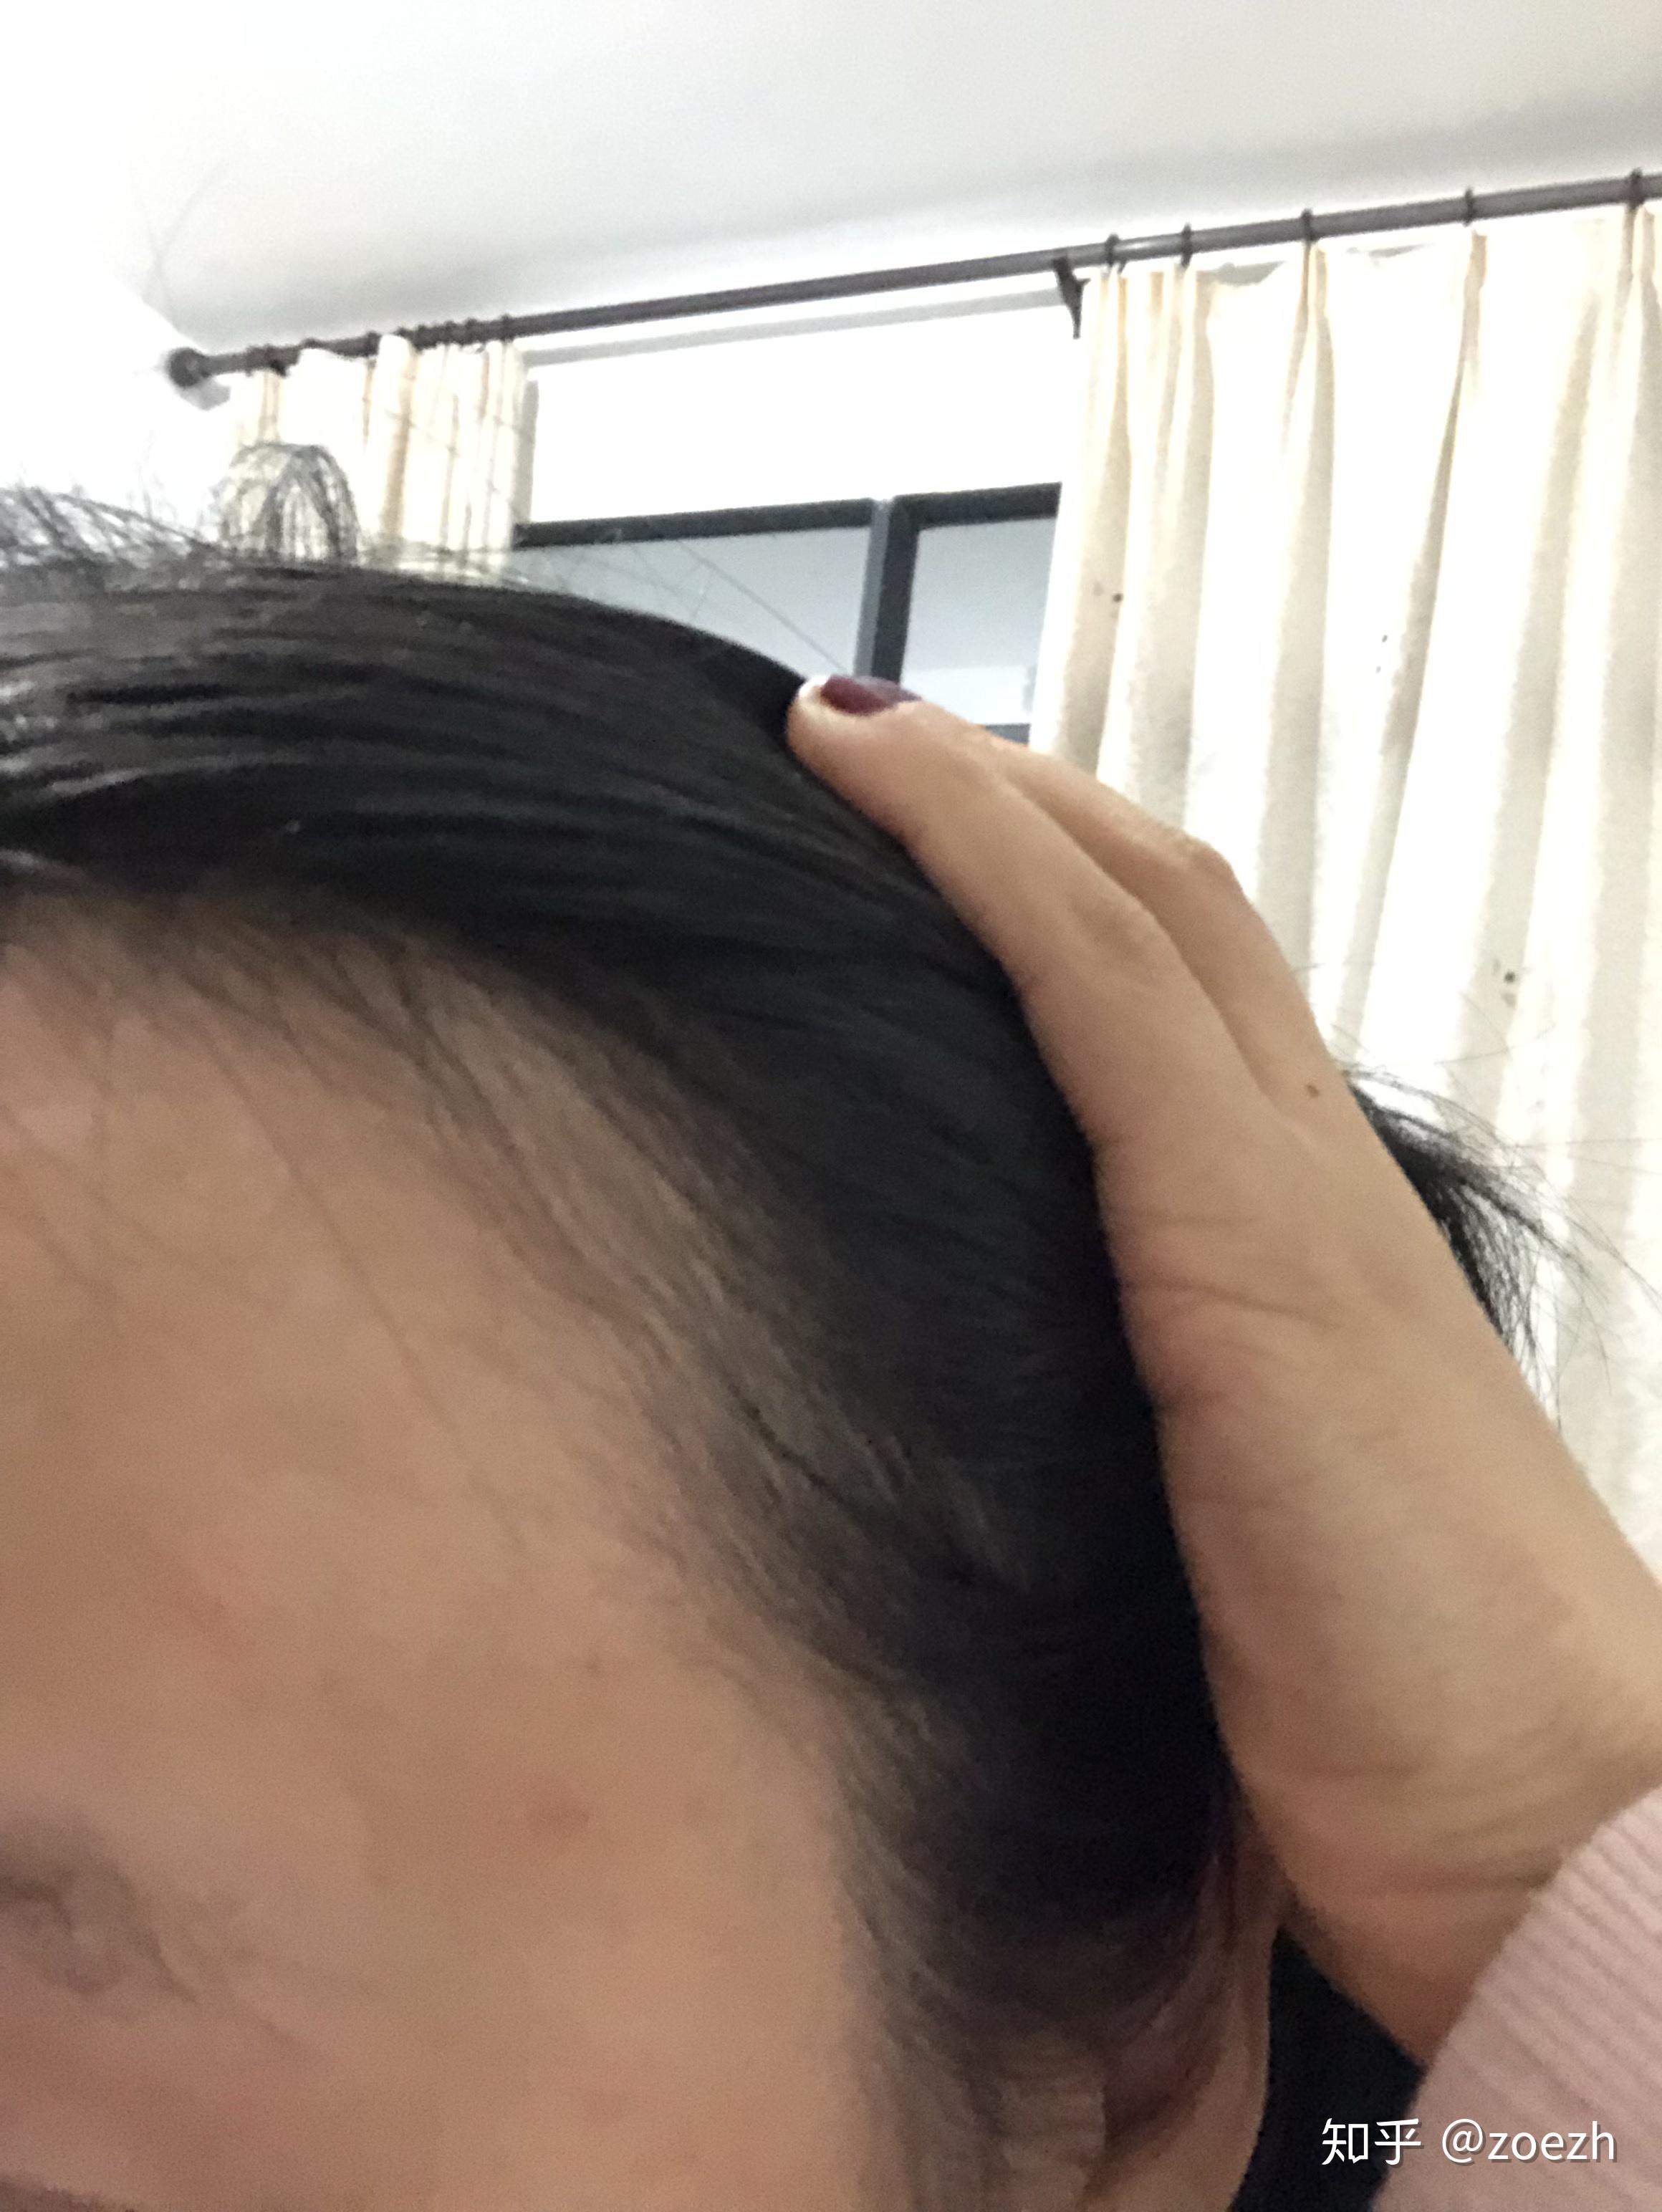 科普：脱发怎么办？严重脱发、发际线后移如何对症治疗？植发效果如何？ - 知乎